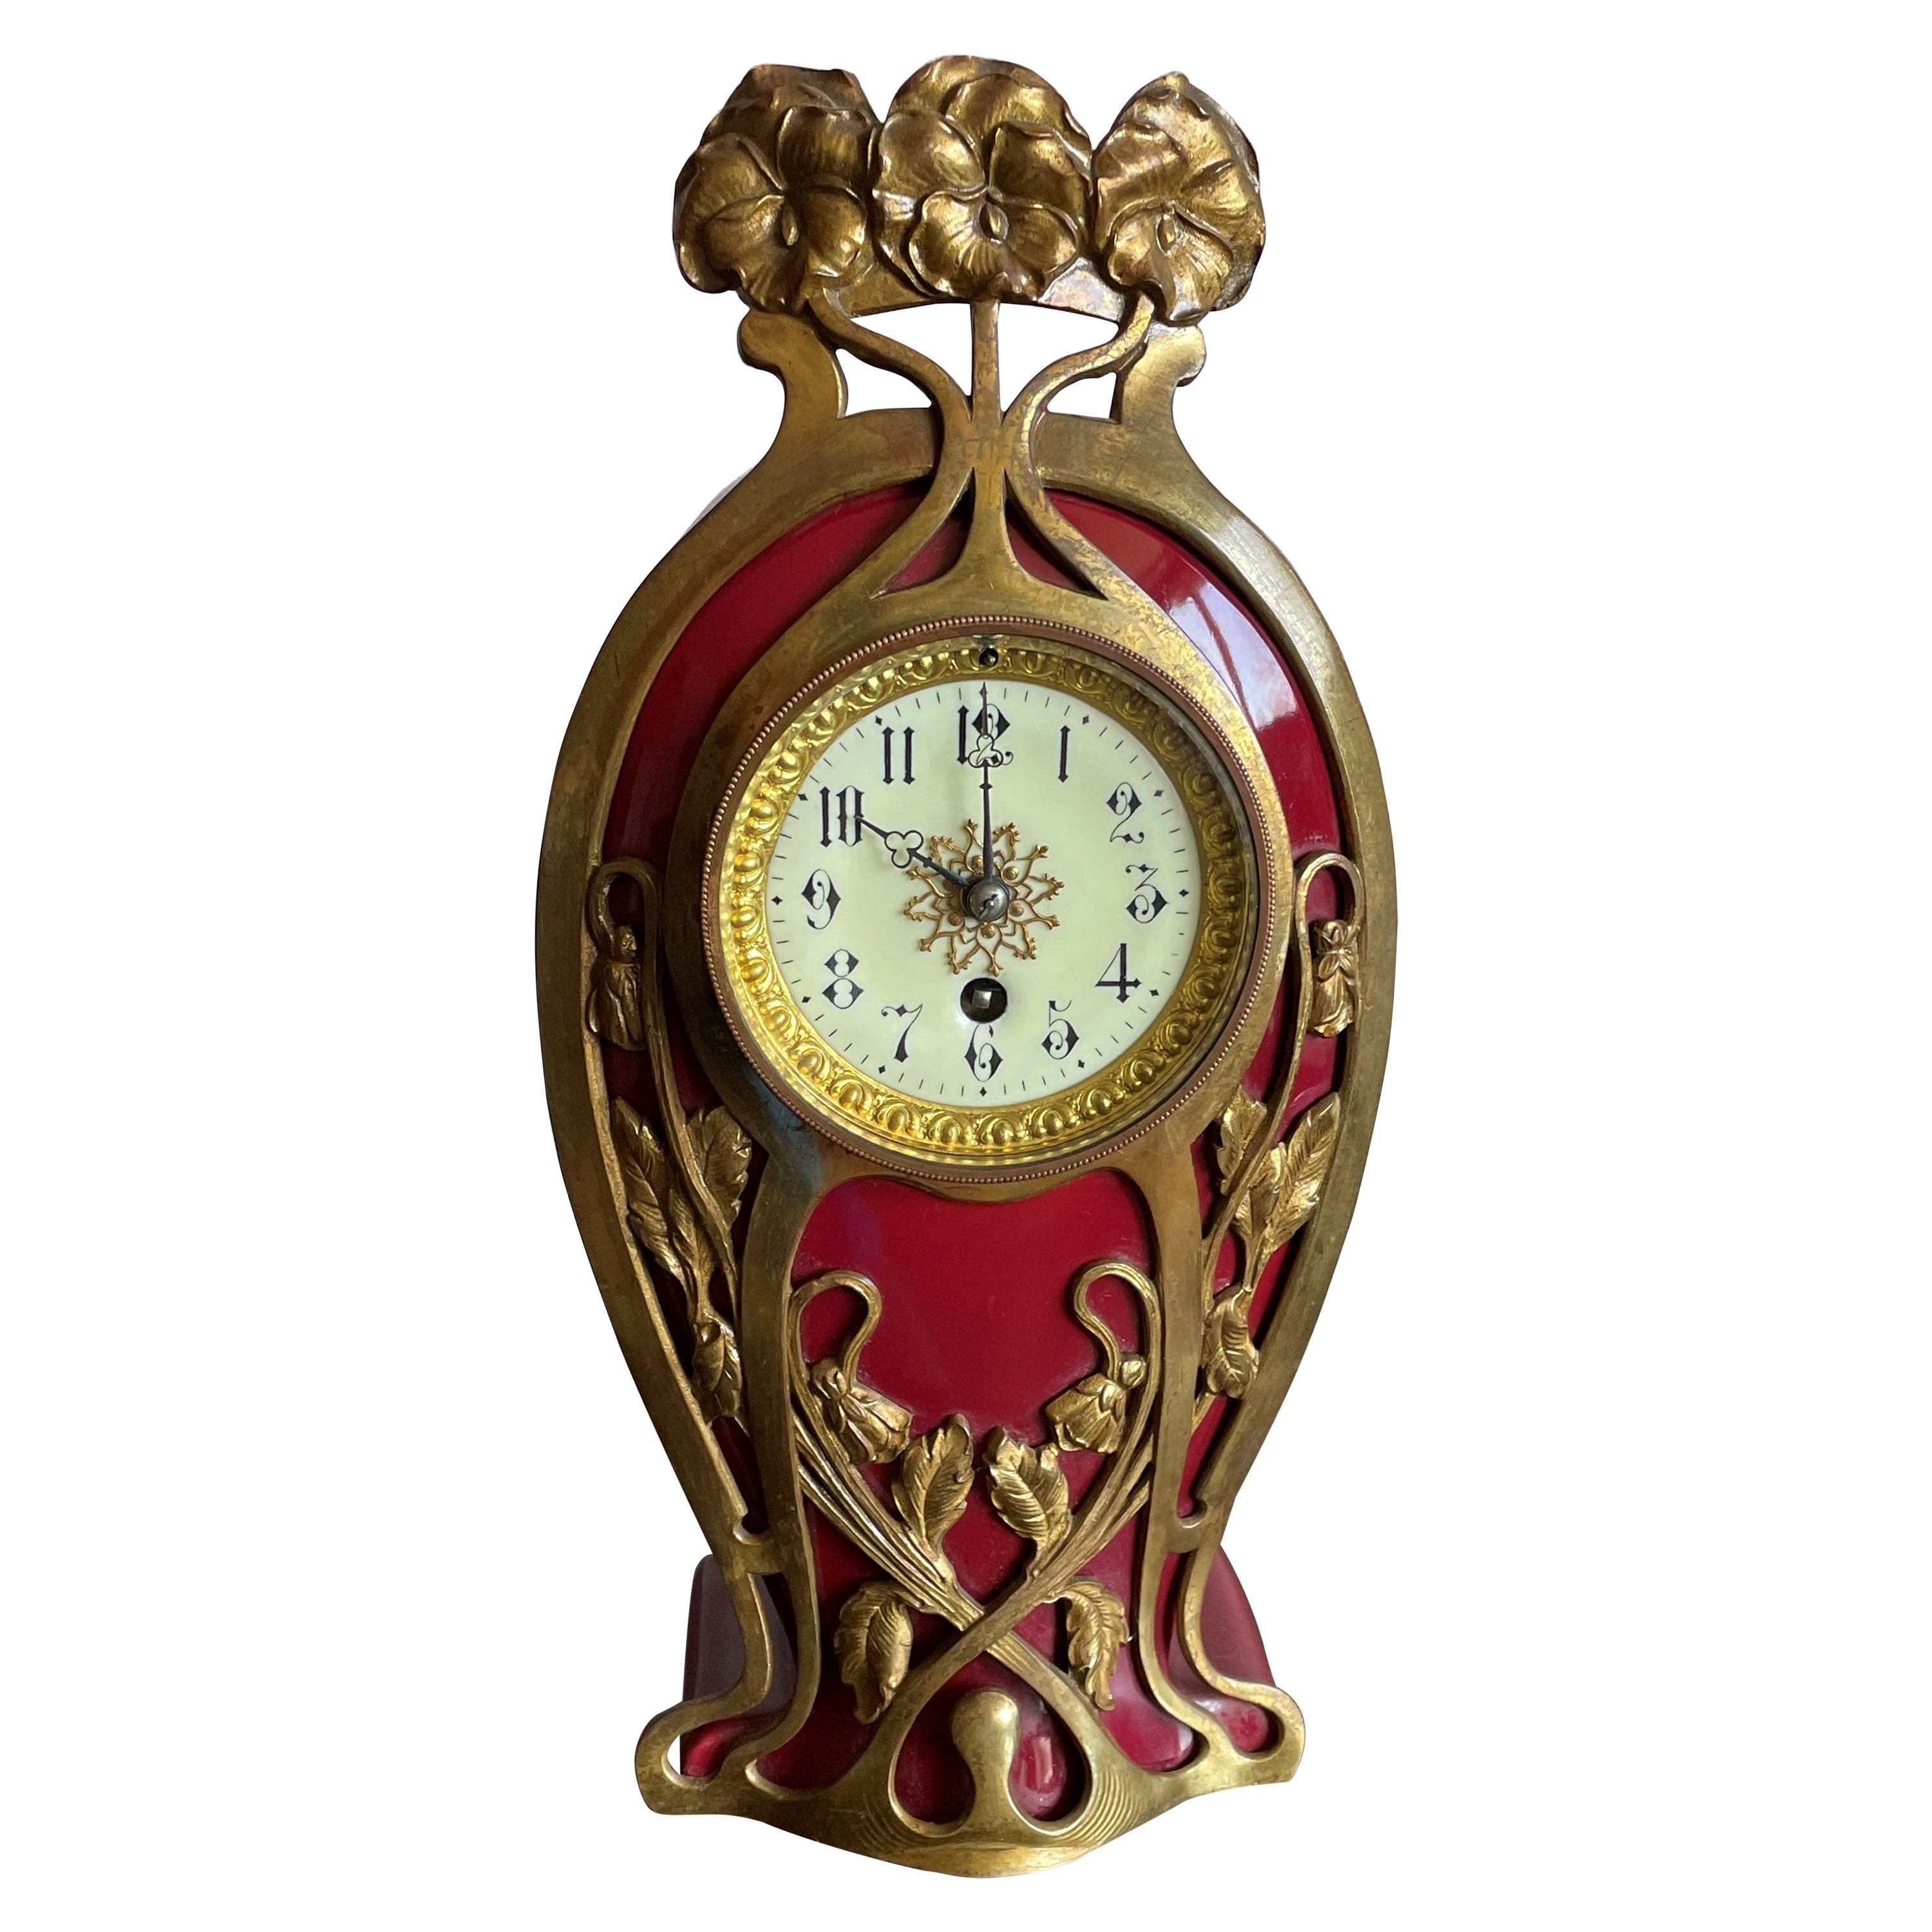 Antique Art Nouveau Ceramic Table or Mantel Clock with Bronze Flower Sculptures